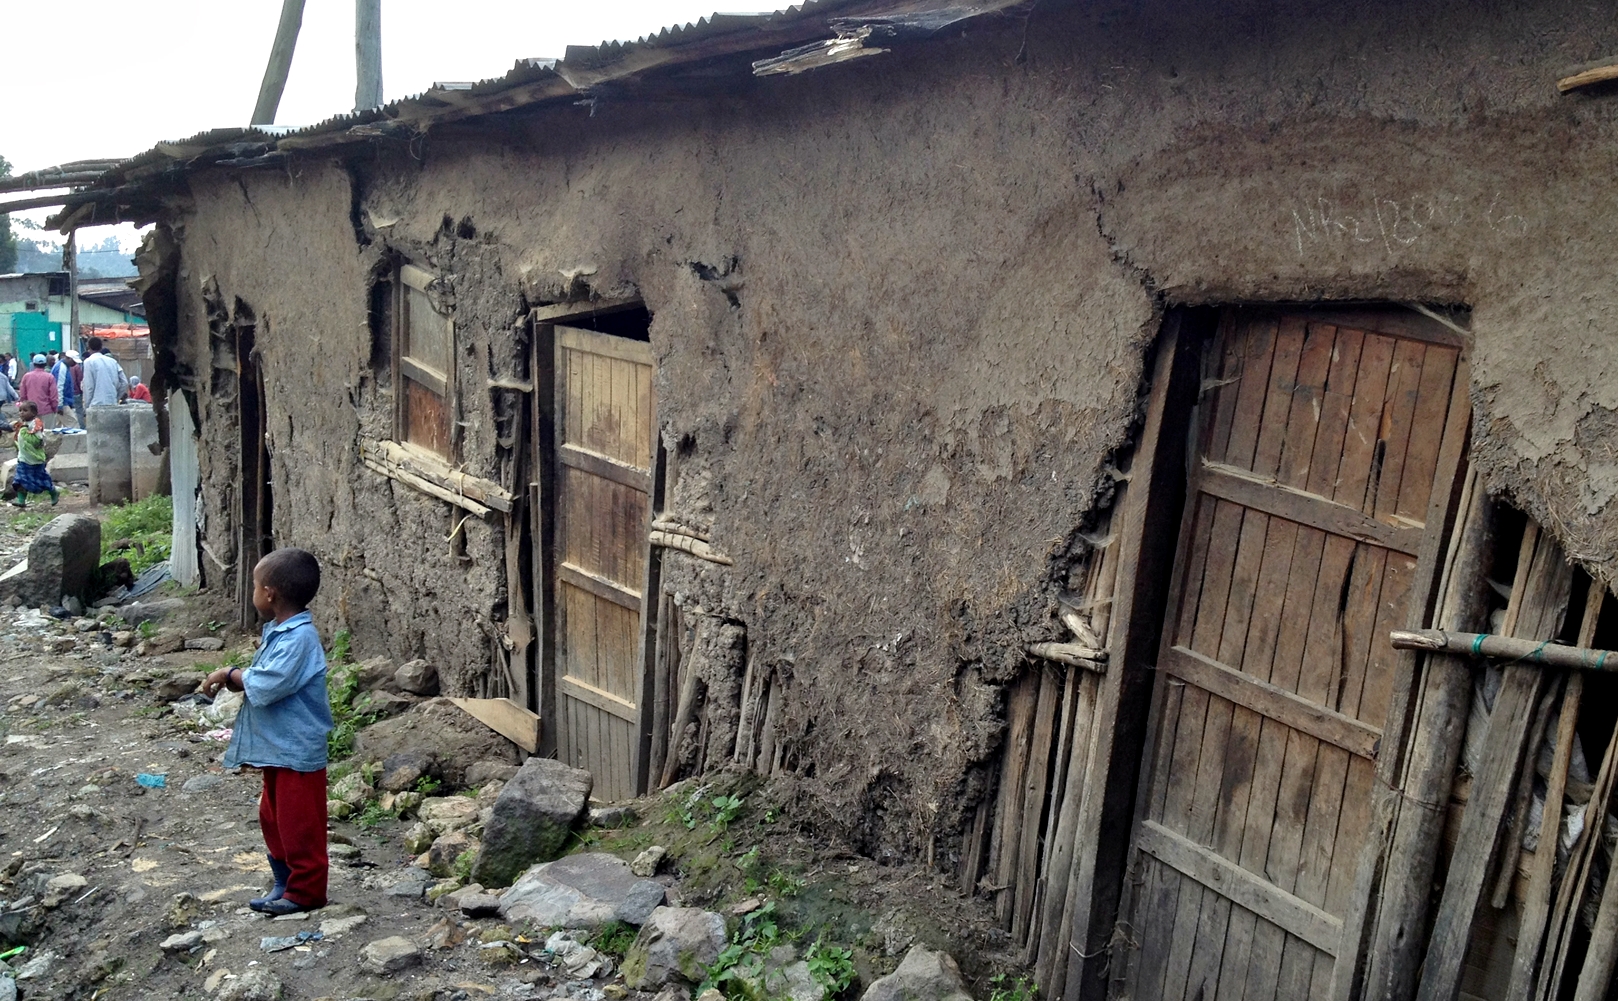 A slum in Ethiopia.